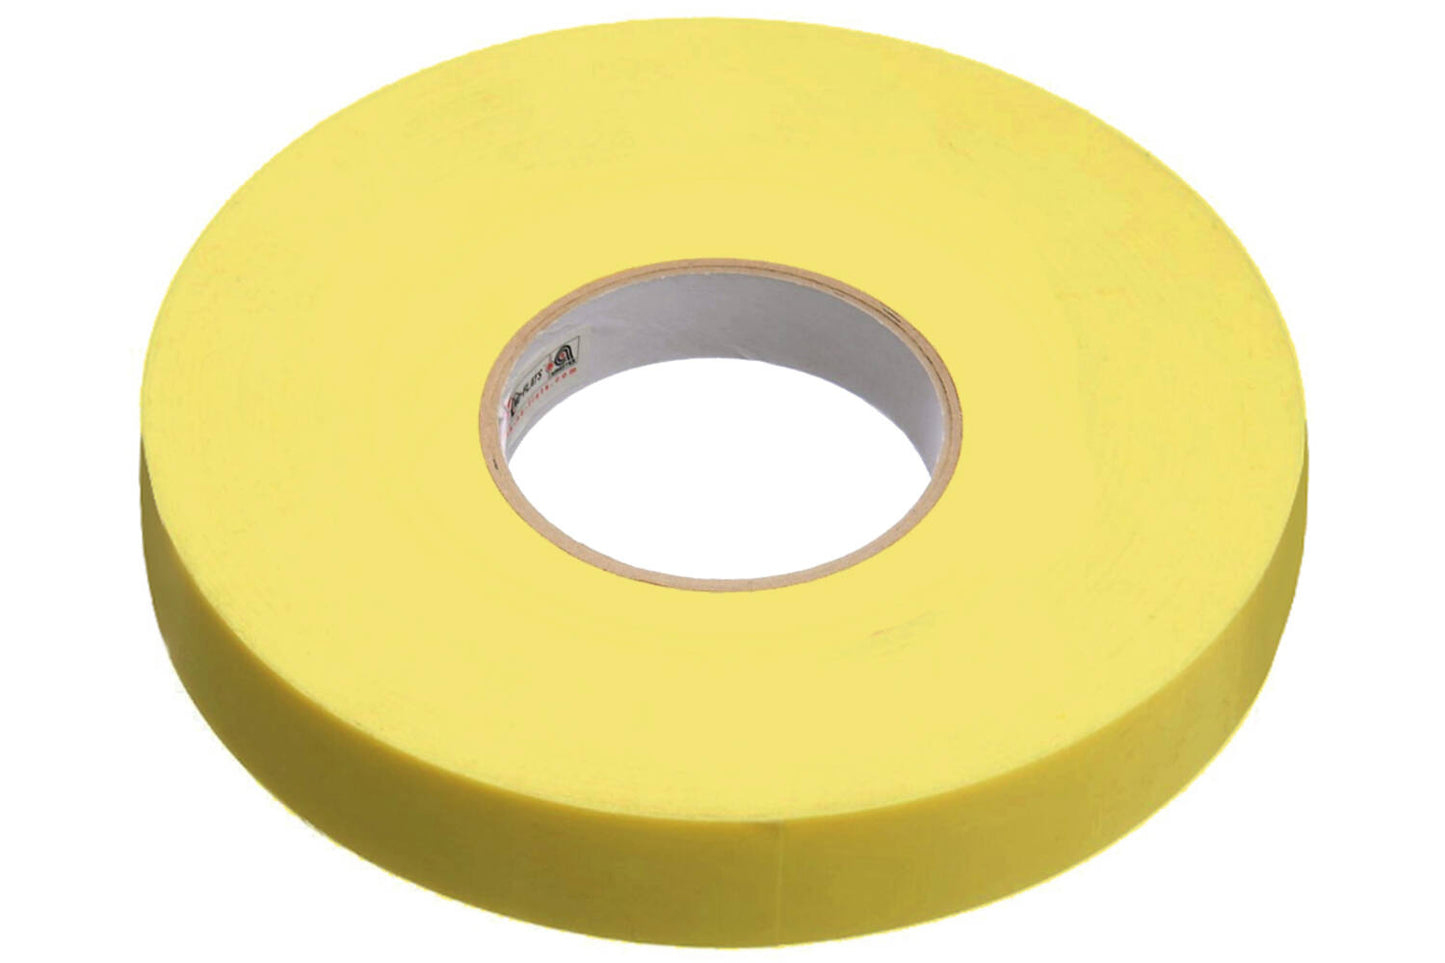 Joe's No Flats - Correos sin tubo Slint amarillo 29 mm x 60m